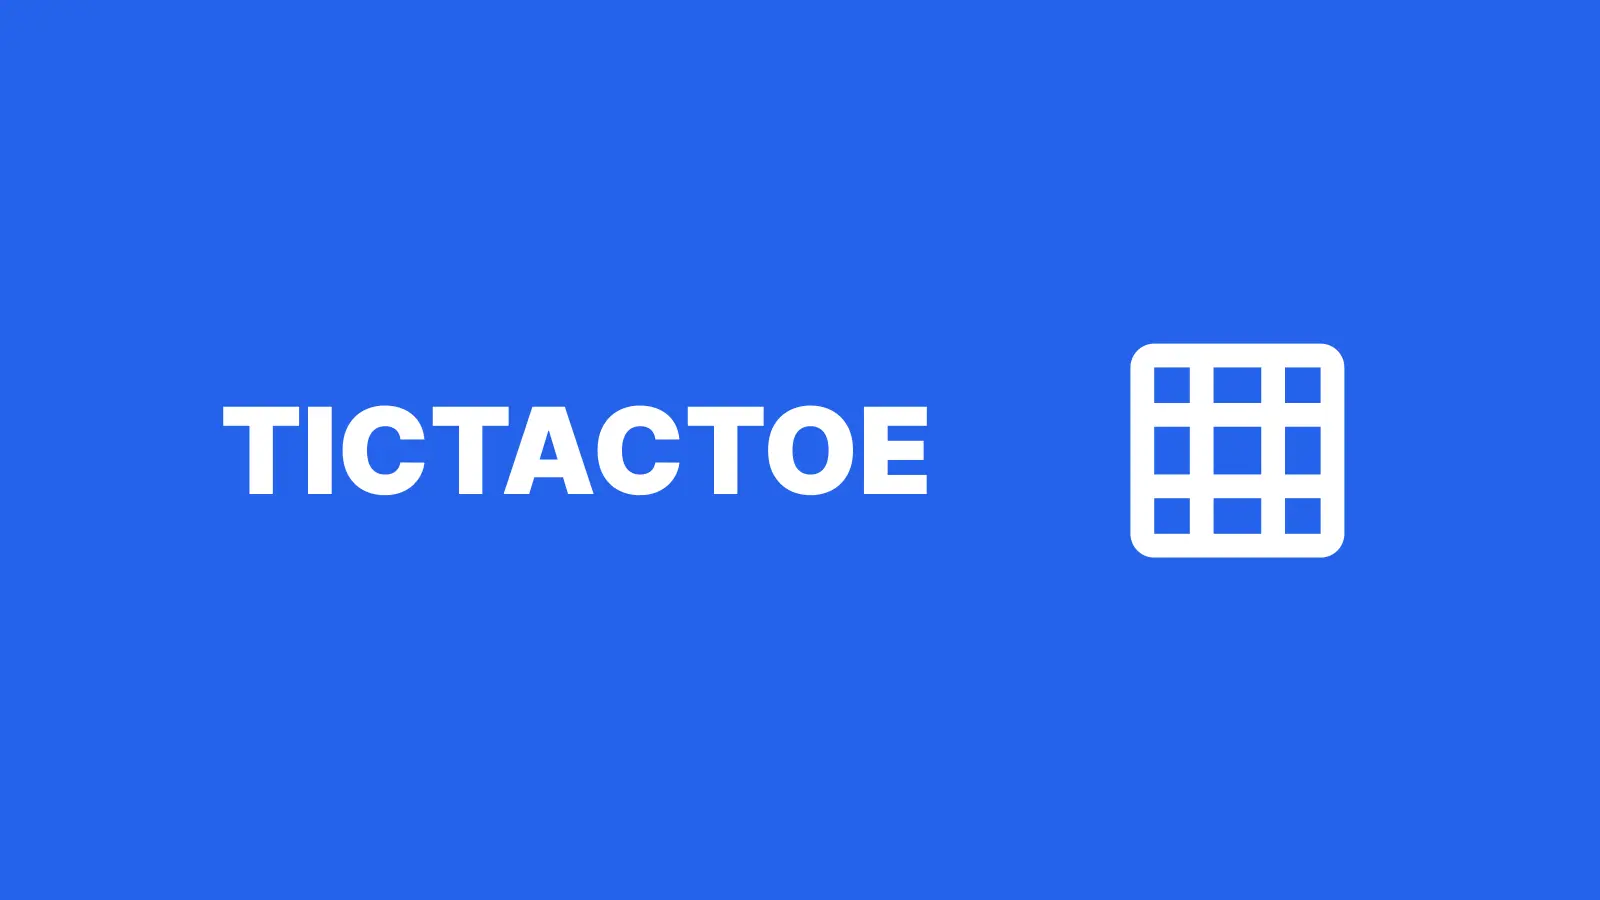 TicTacToe Server